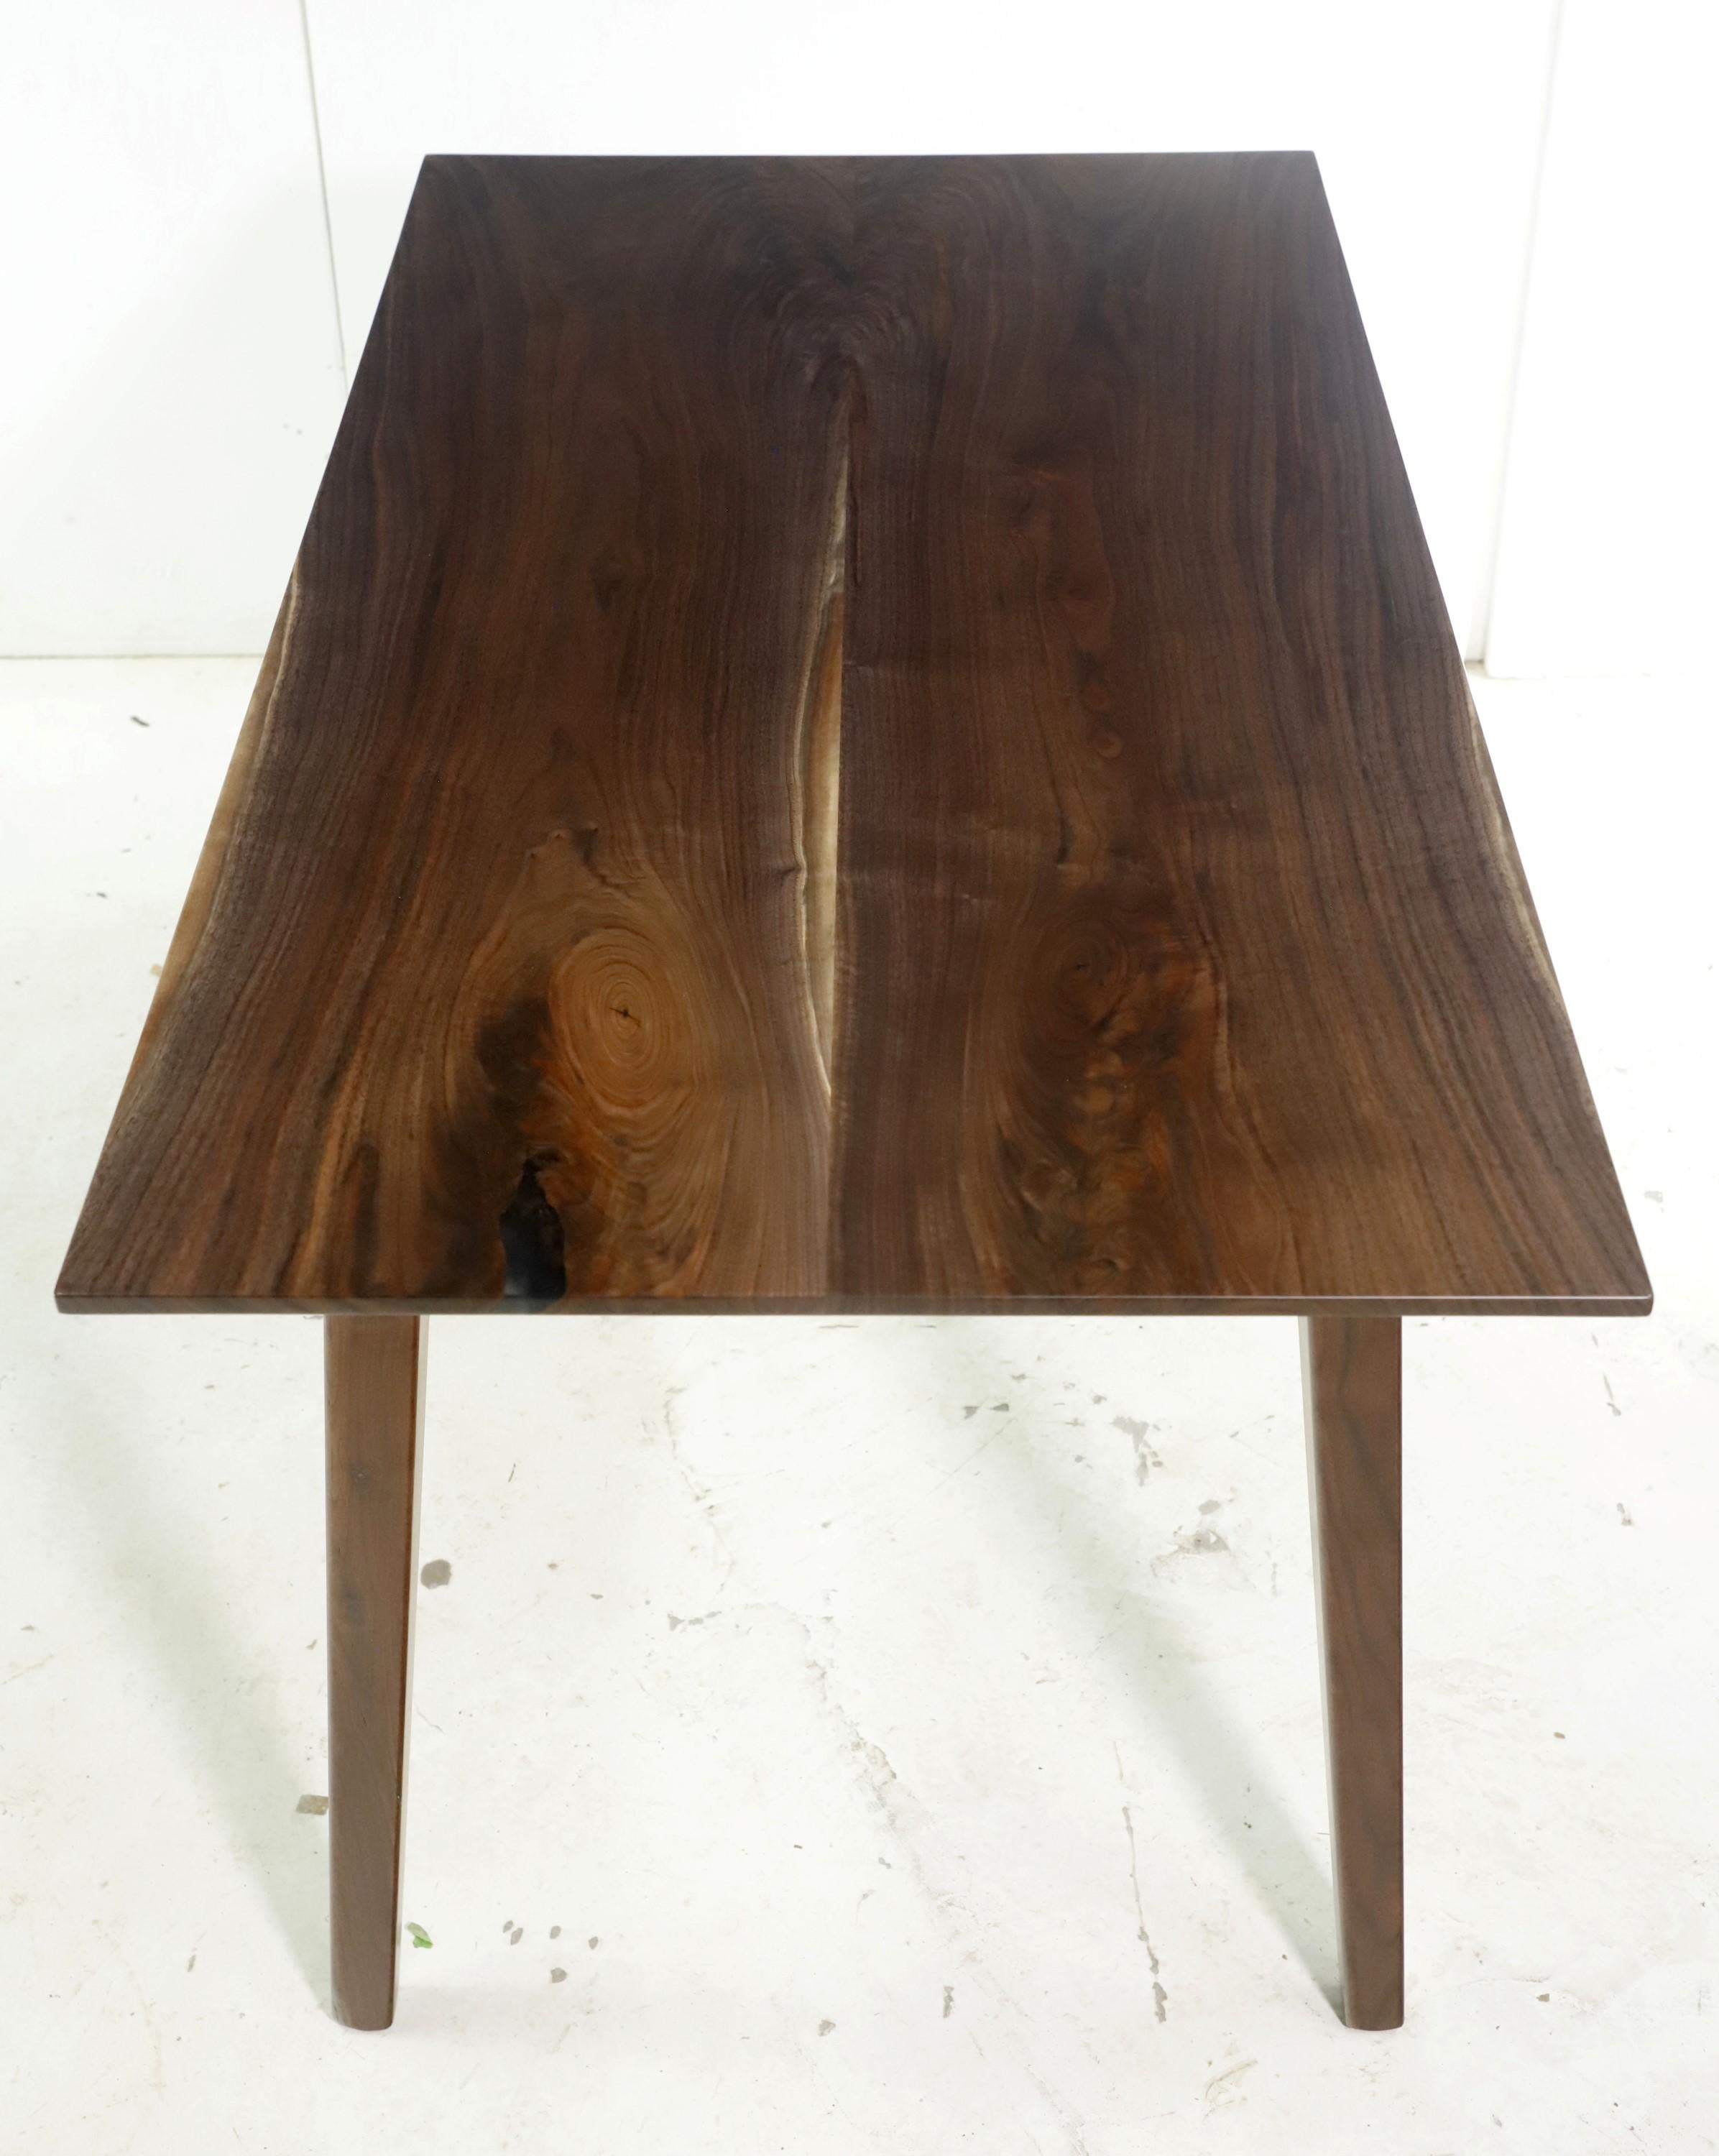 Dieser Tisch verfügt über eine Platte aus massivem Walnussholz mit subtilen kleinen Details aus klarem Harz in der Mitte, gepaart mit spitz zulaufenden Beinen. Dieser Tisch ist versandfertig. Bitte beachten Sie, dieser Artikel befindet sich in